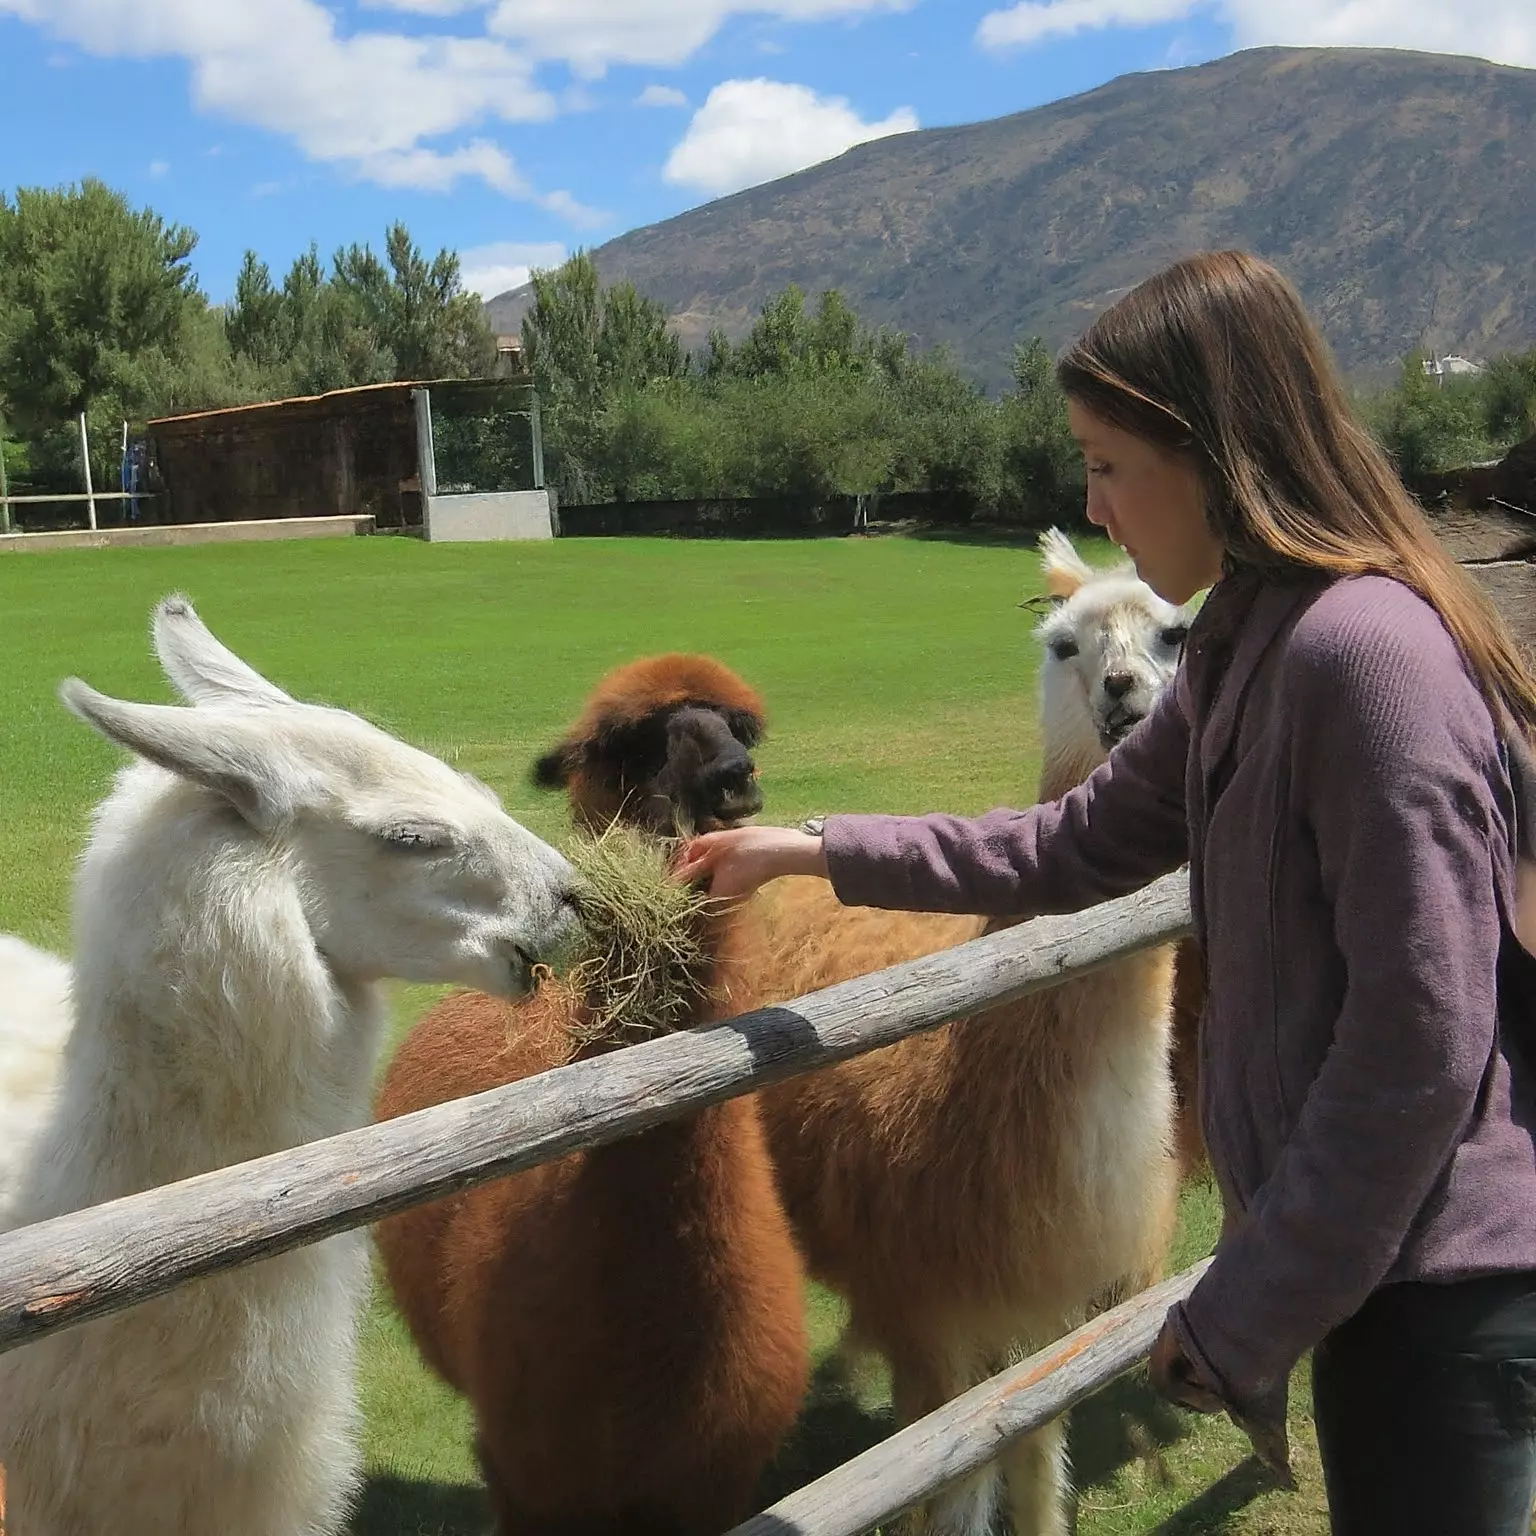 An image of a woman feeding some llamas. [U]